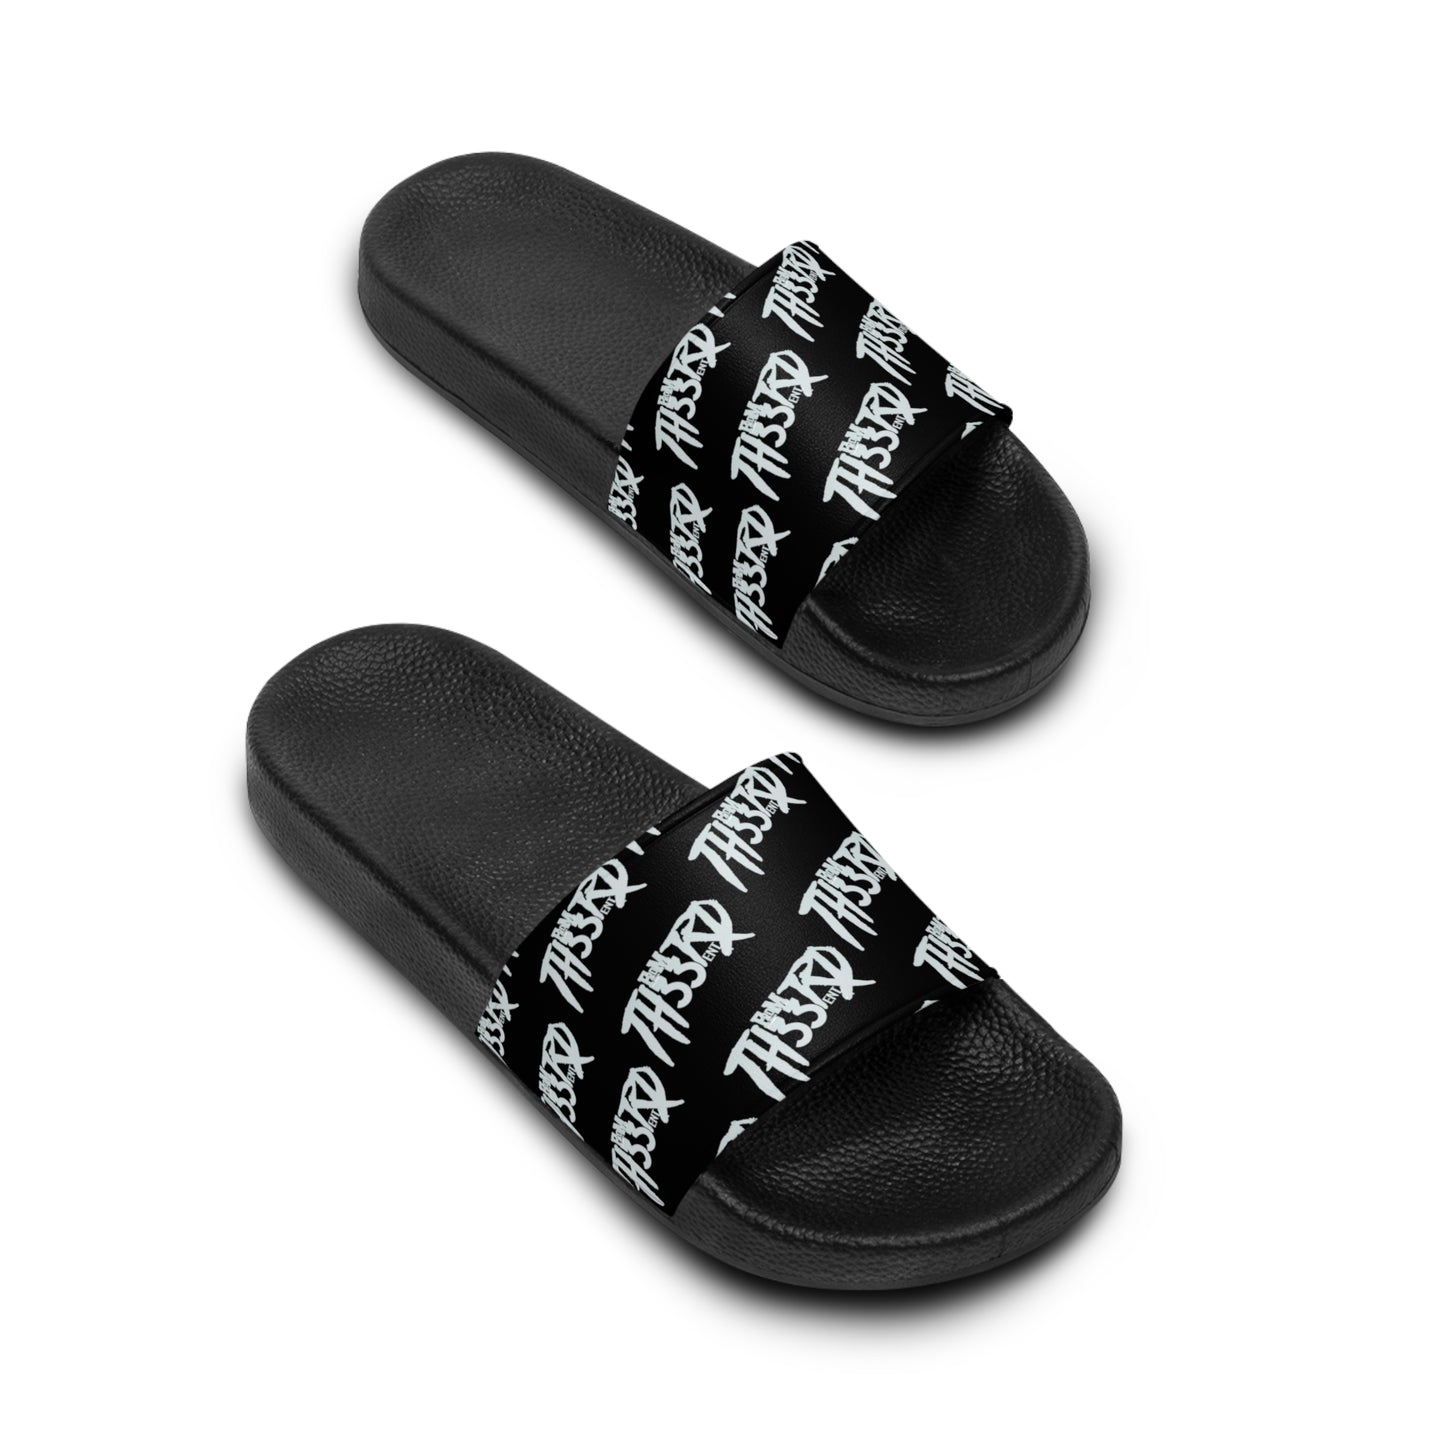 Fromth33rd all over Men's Slide Sandals